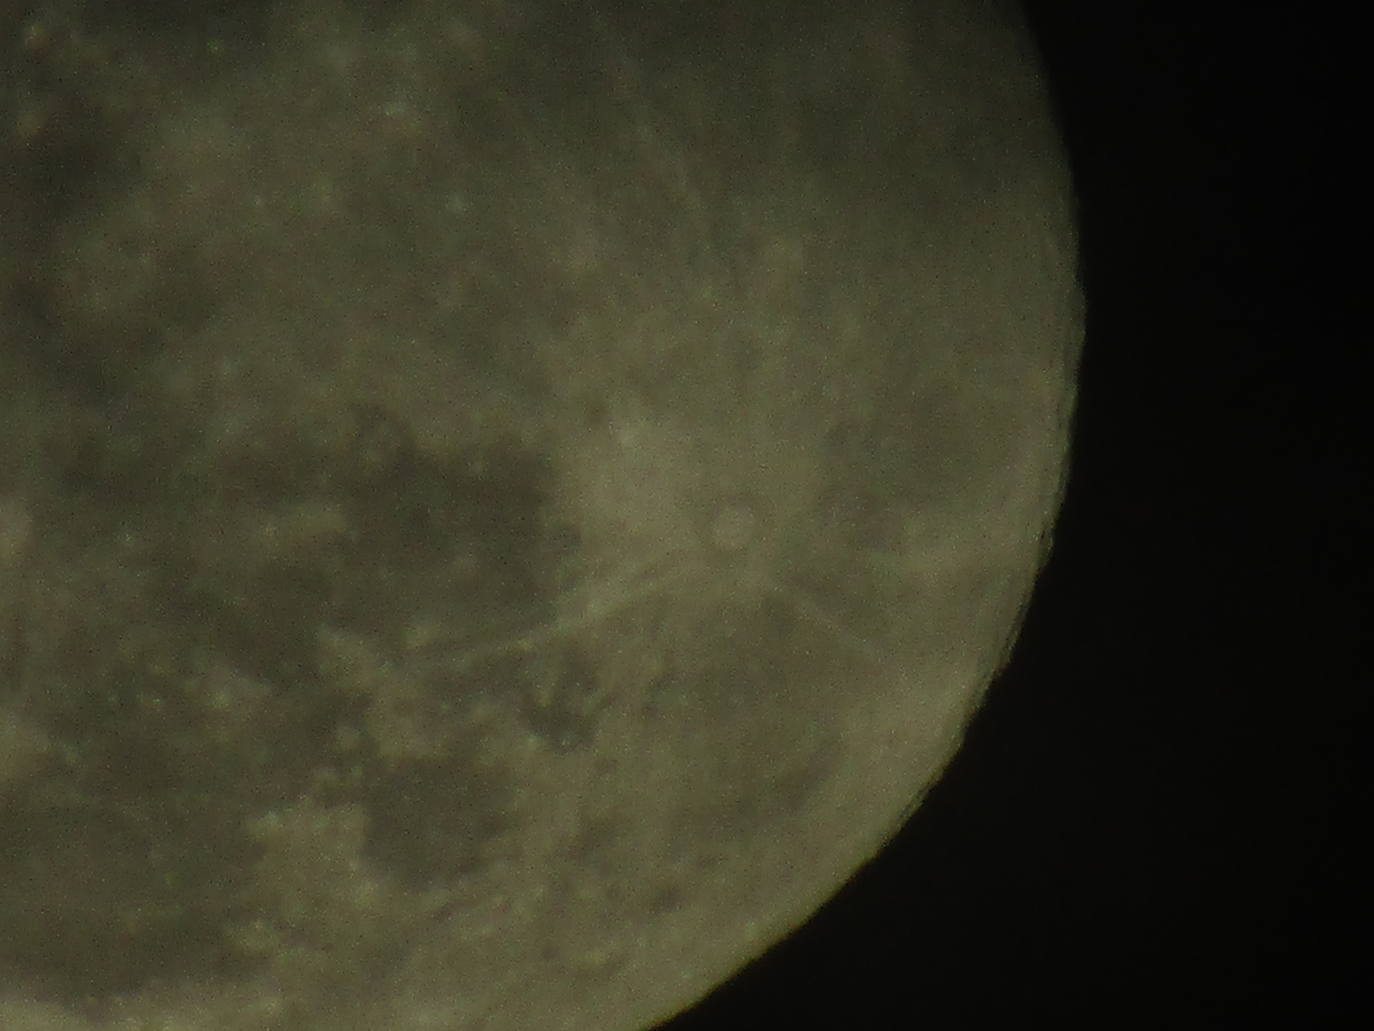 La segunda luna del perigeo del año, conocida popularmente como superluna, ha iluminado esta noche el cielo con una apariencia ligeramente mayor -hasta un 14 por ciento- de lo habitual y un brillo un 30 por ciento más intenso. En Valencia, pese a las nubes altas, también se ha podido contemplar